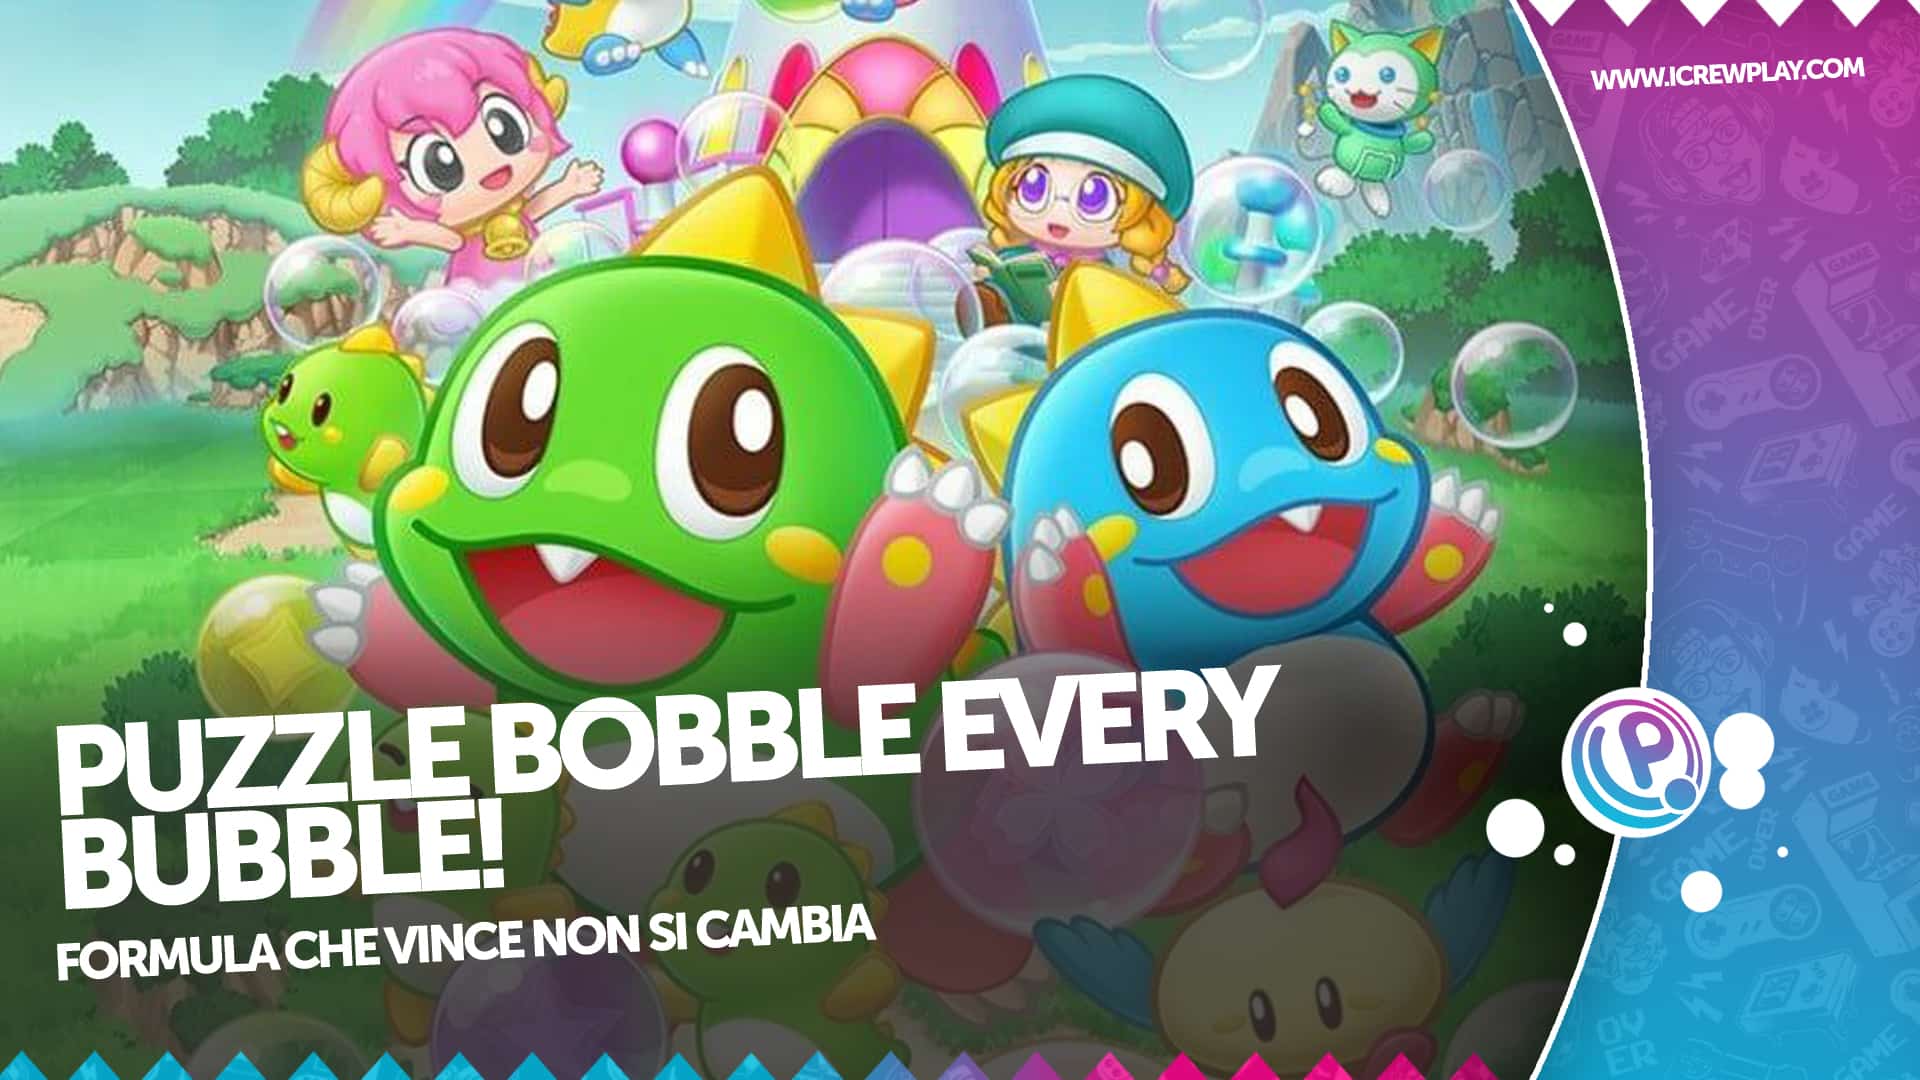 Puzzle Bobble Everybubble! la nostra recensione 2